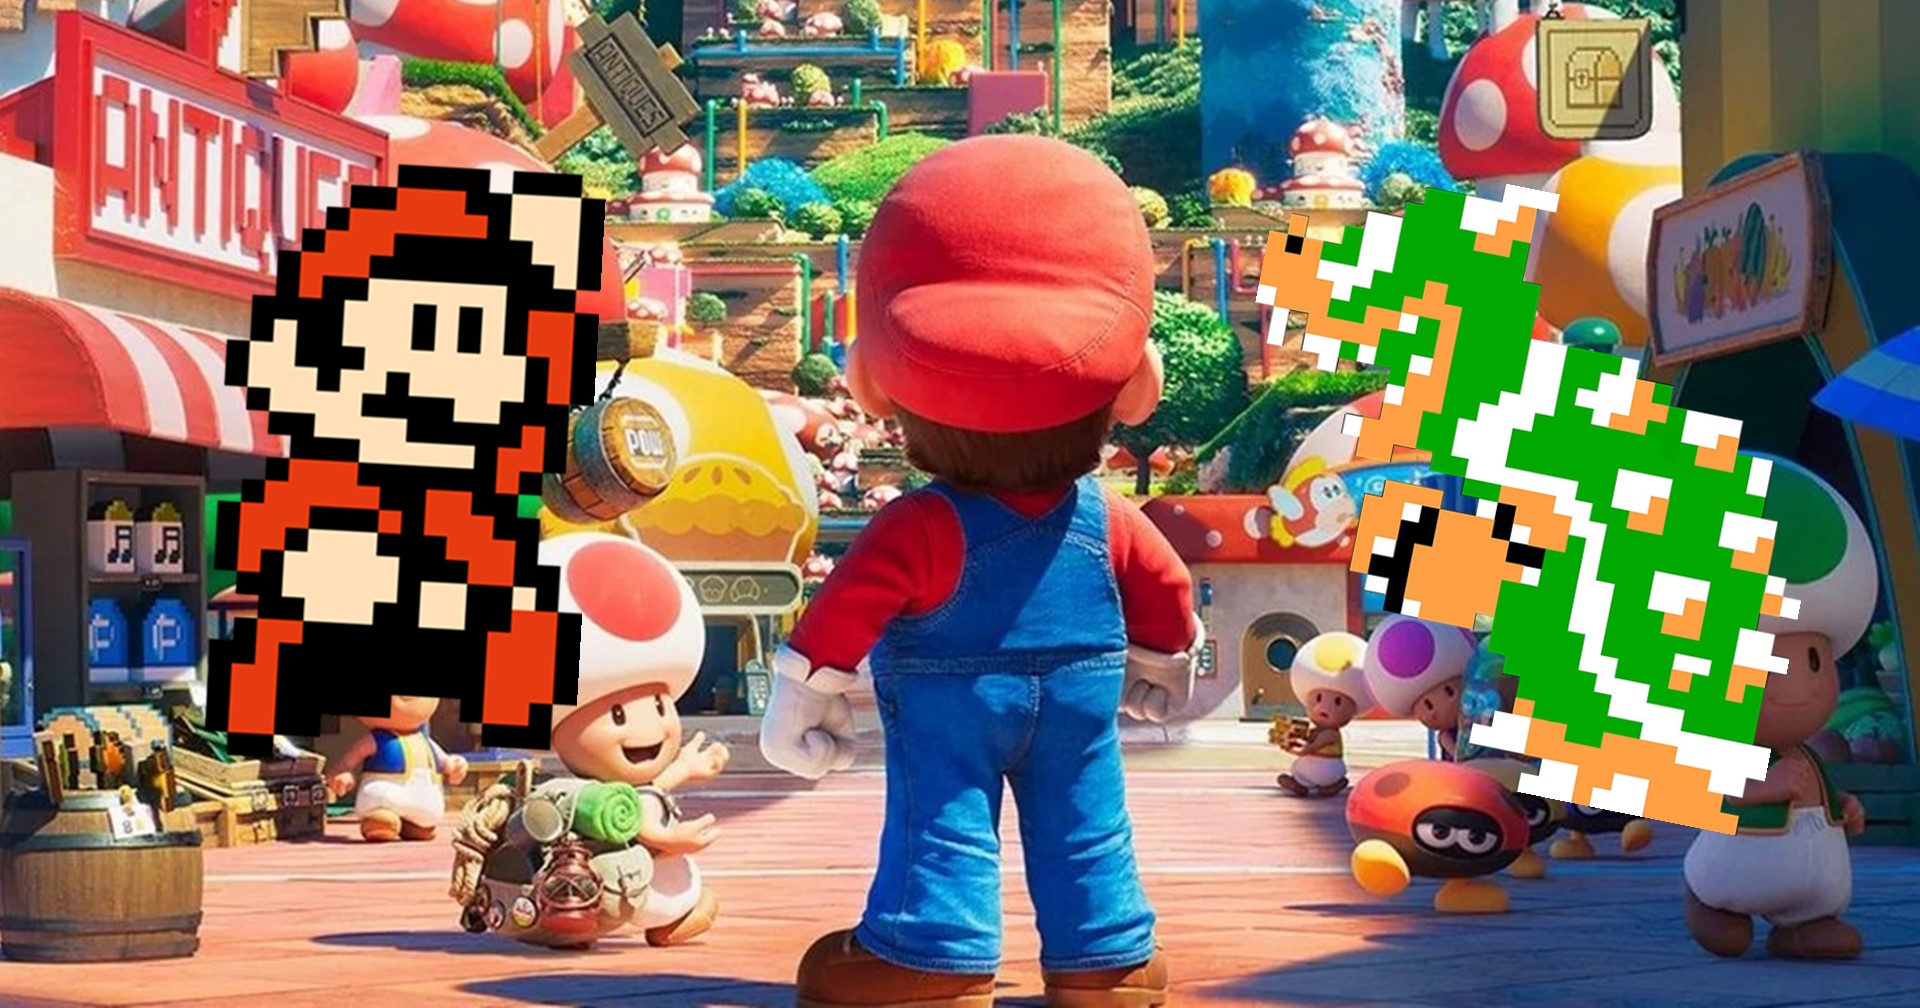 แฟนเกมใส่เสียงประกอบเกมลงในตัวอย่างหนัง The Super Mario Movie ที่ออกมาดีกว่าต้นฉบับ